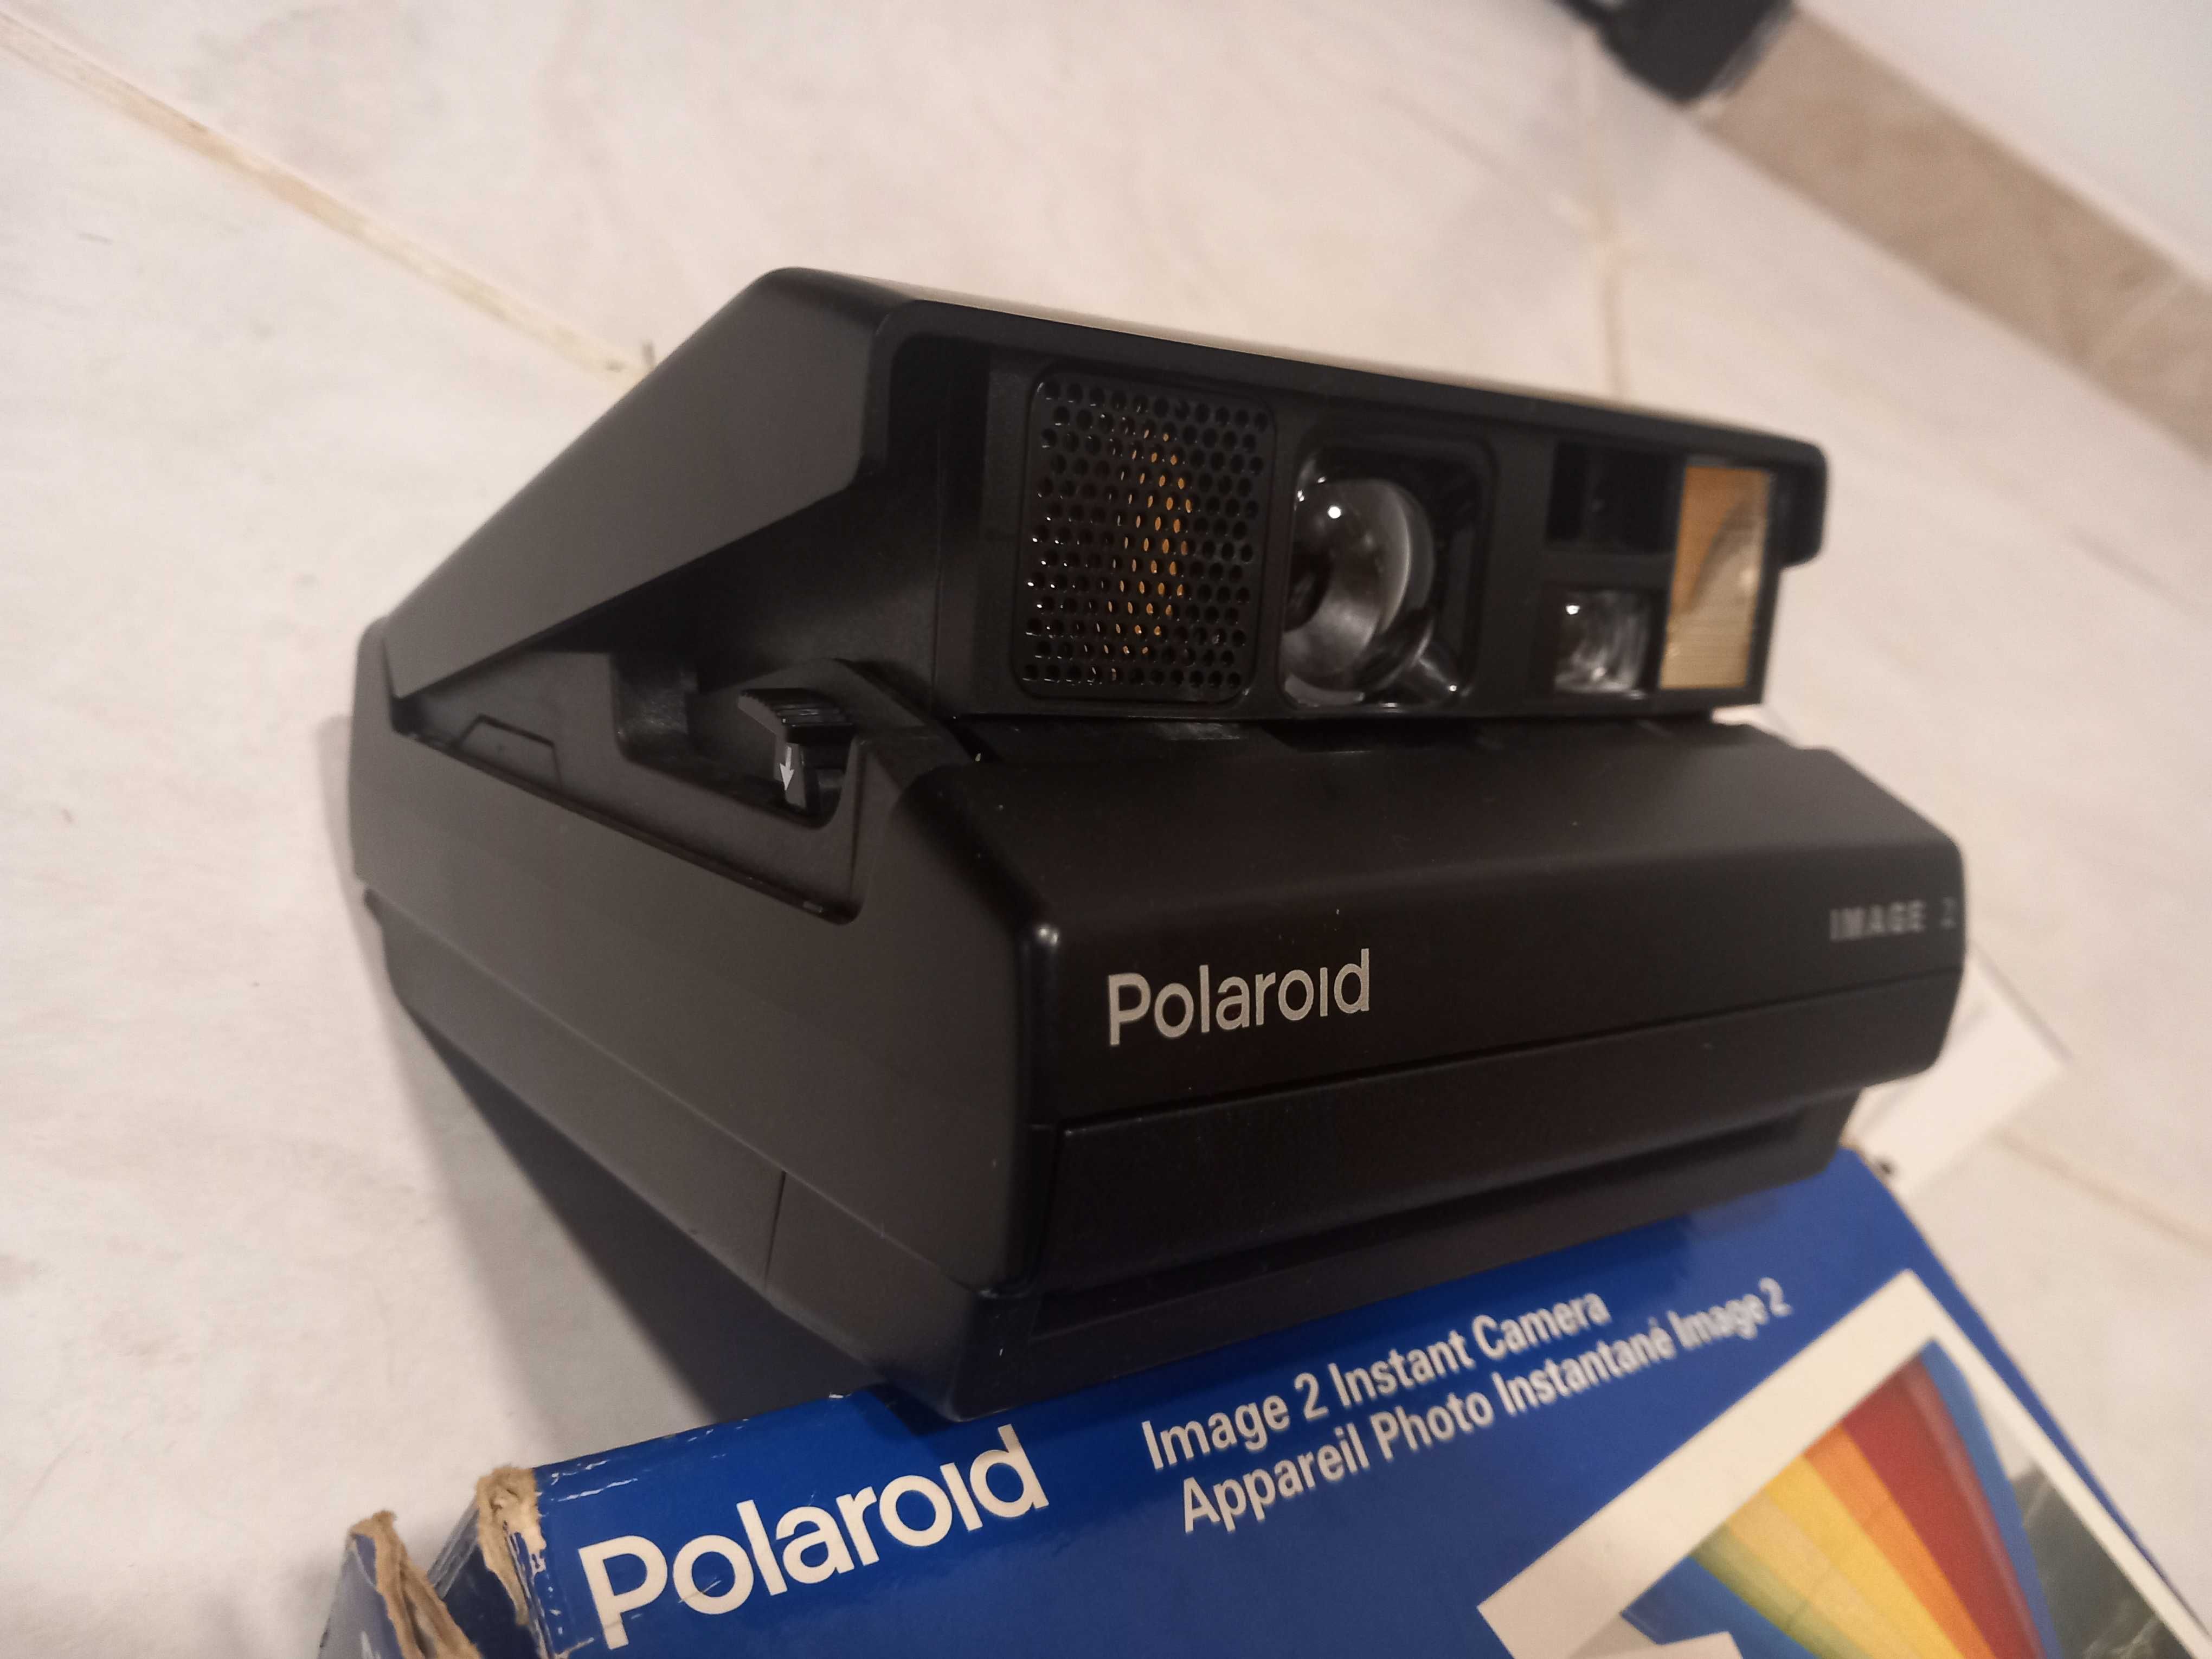 Polaroid image 2 com cartucho velho, caixa e manual